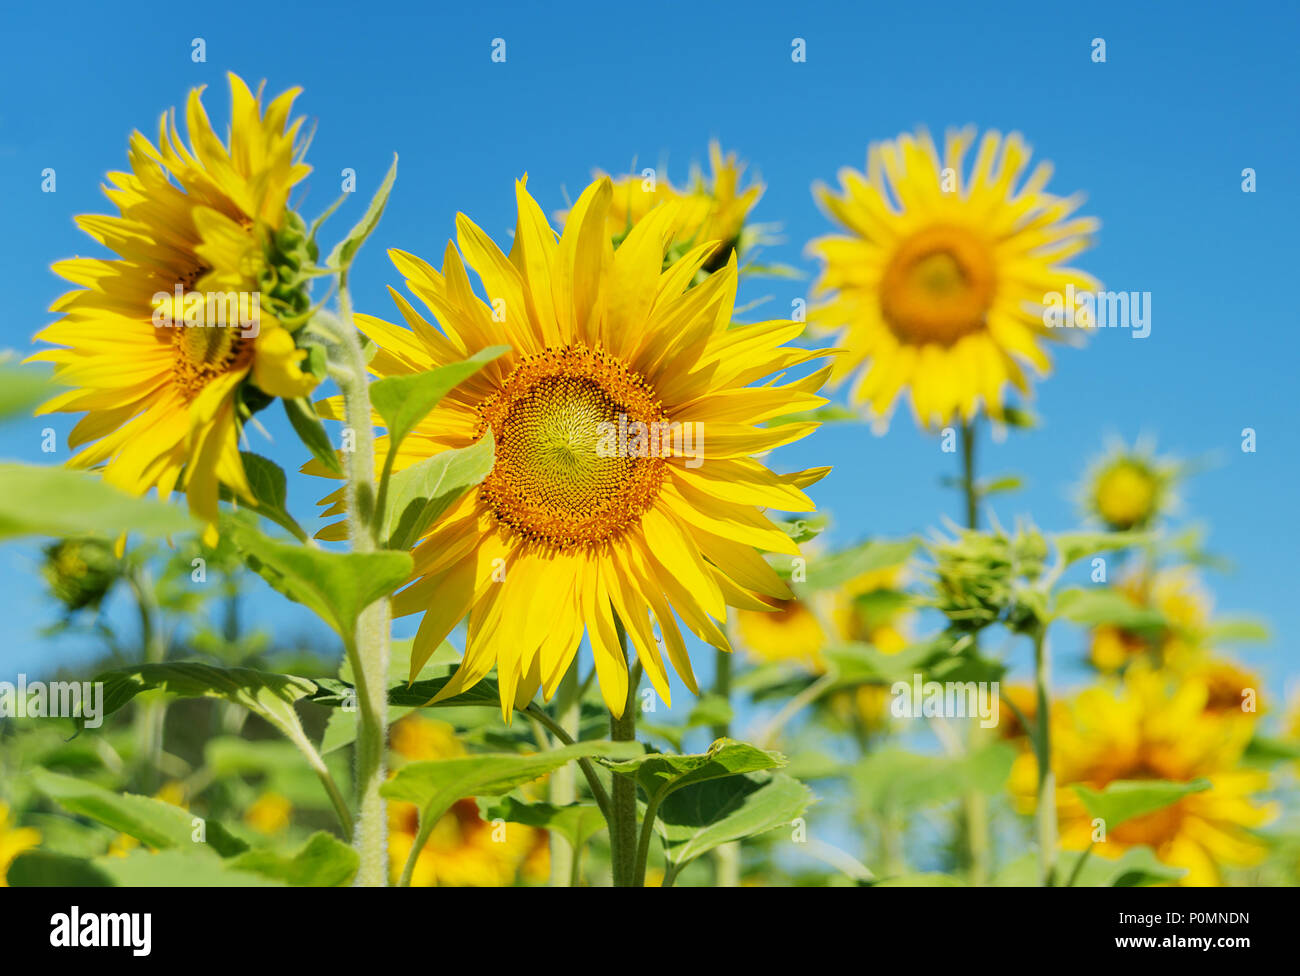 Leuchtend gelbe Blüte der Sonnenblume auf einem Feld auf dem Hintergrund der klare, blaue Himmel close-up Stockfoto